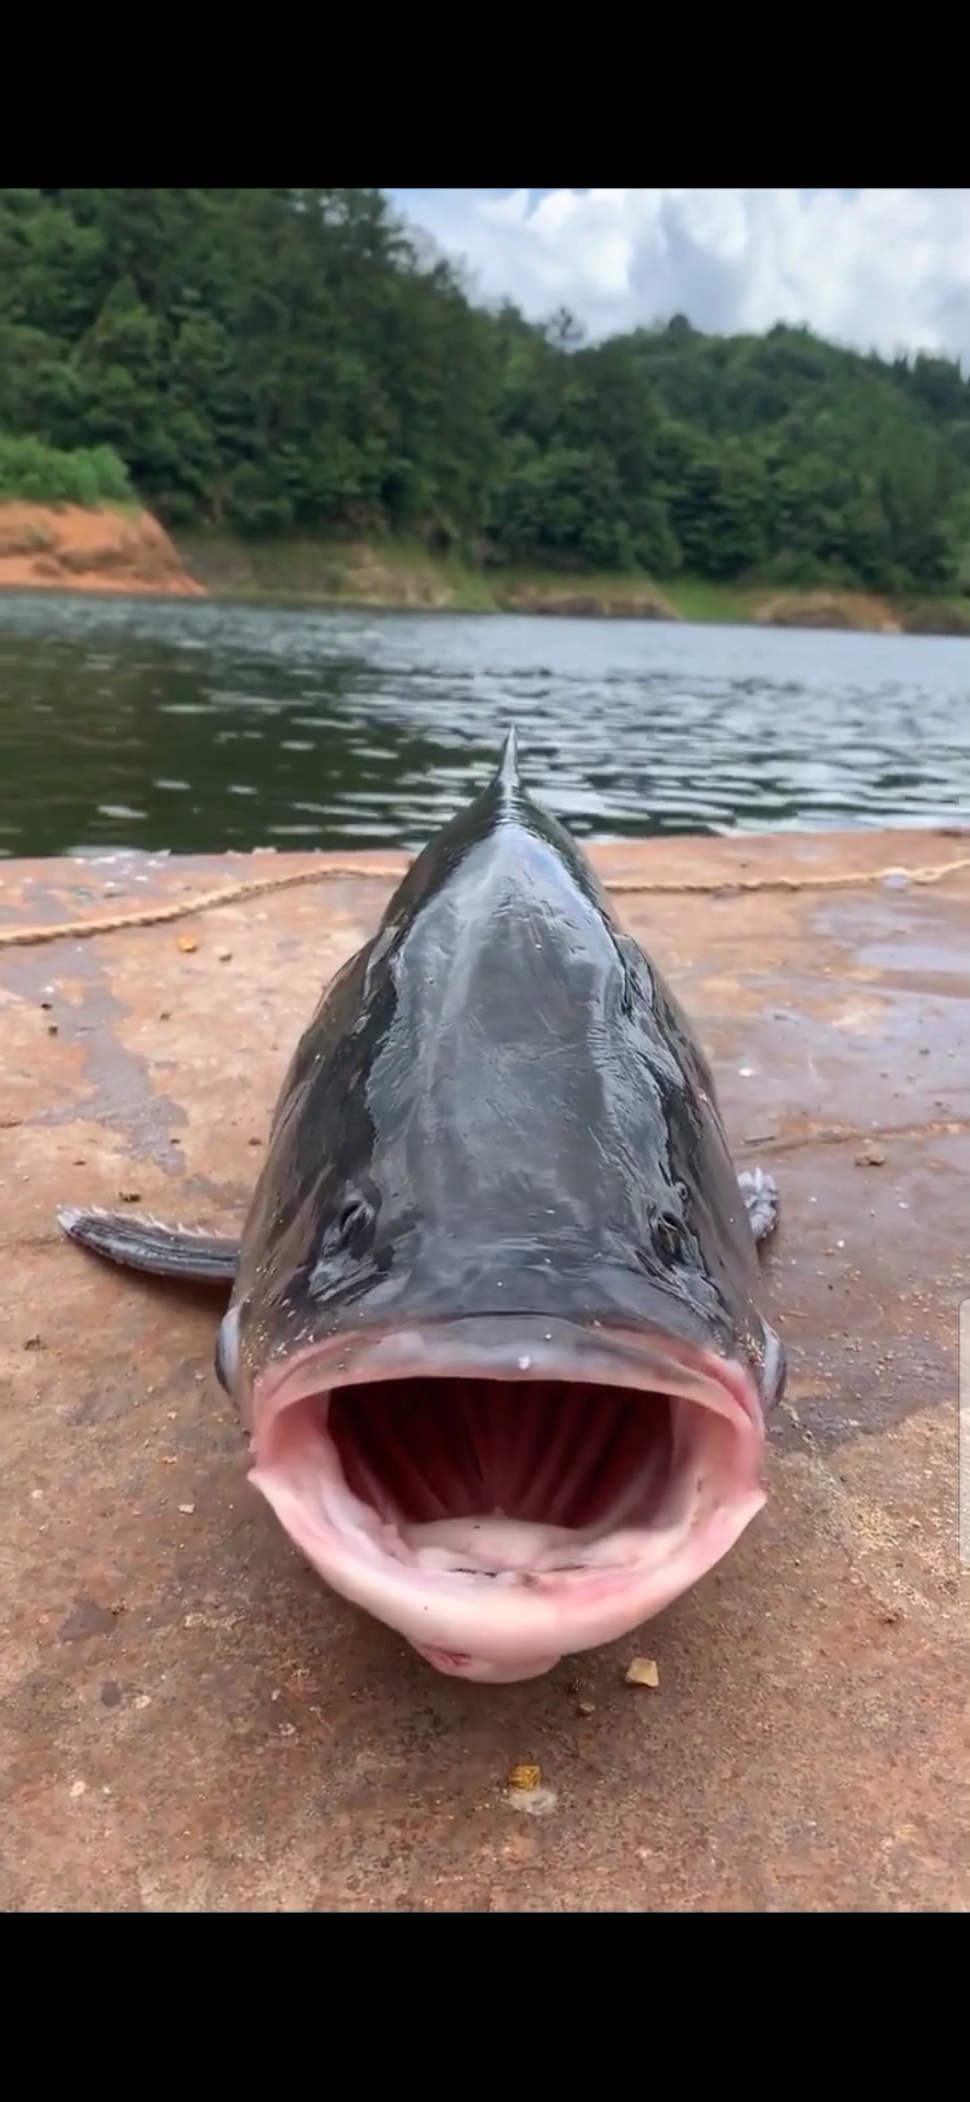 这是什么鱼啊,这嘴巴也太大了吧?